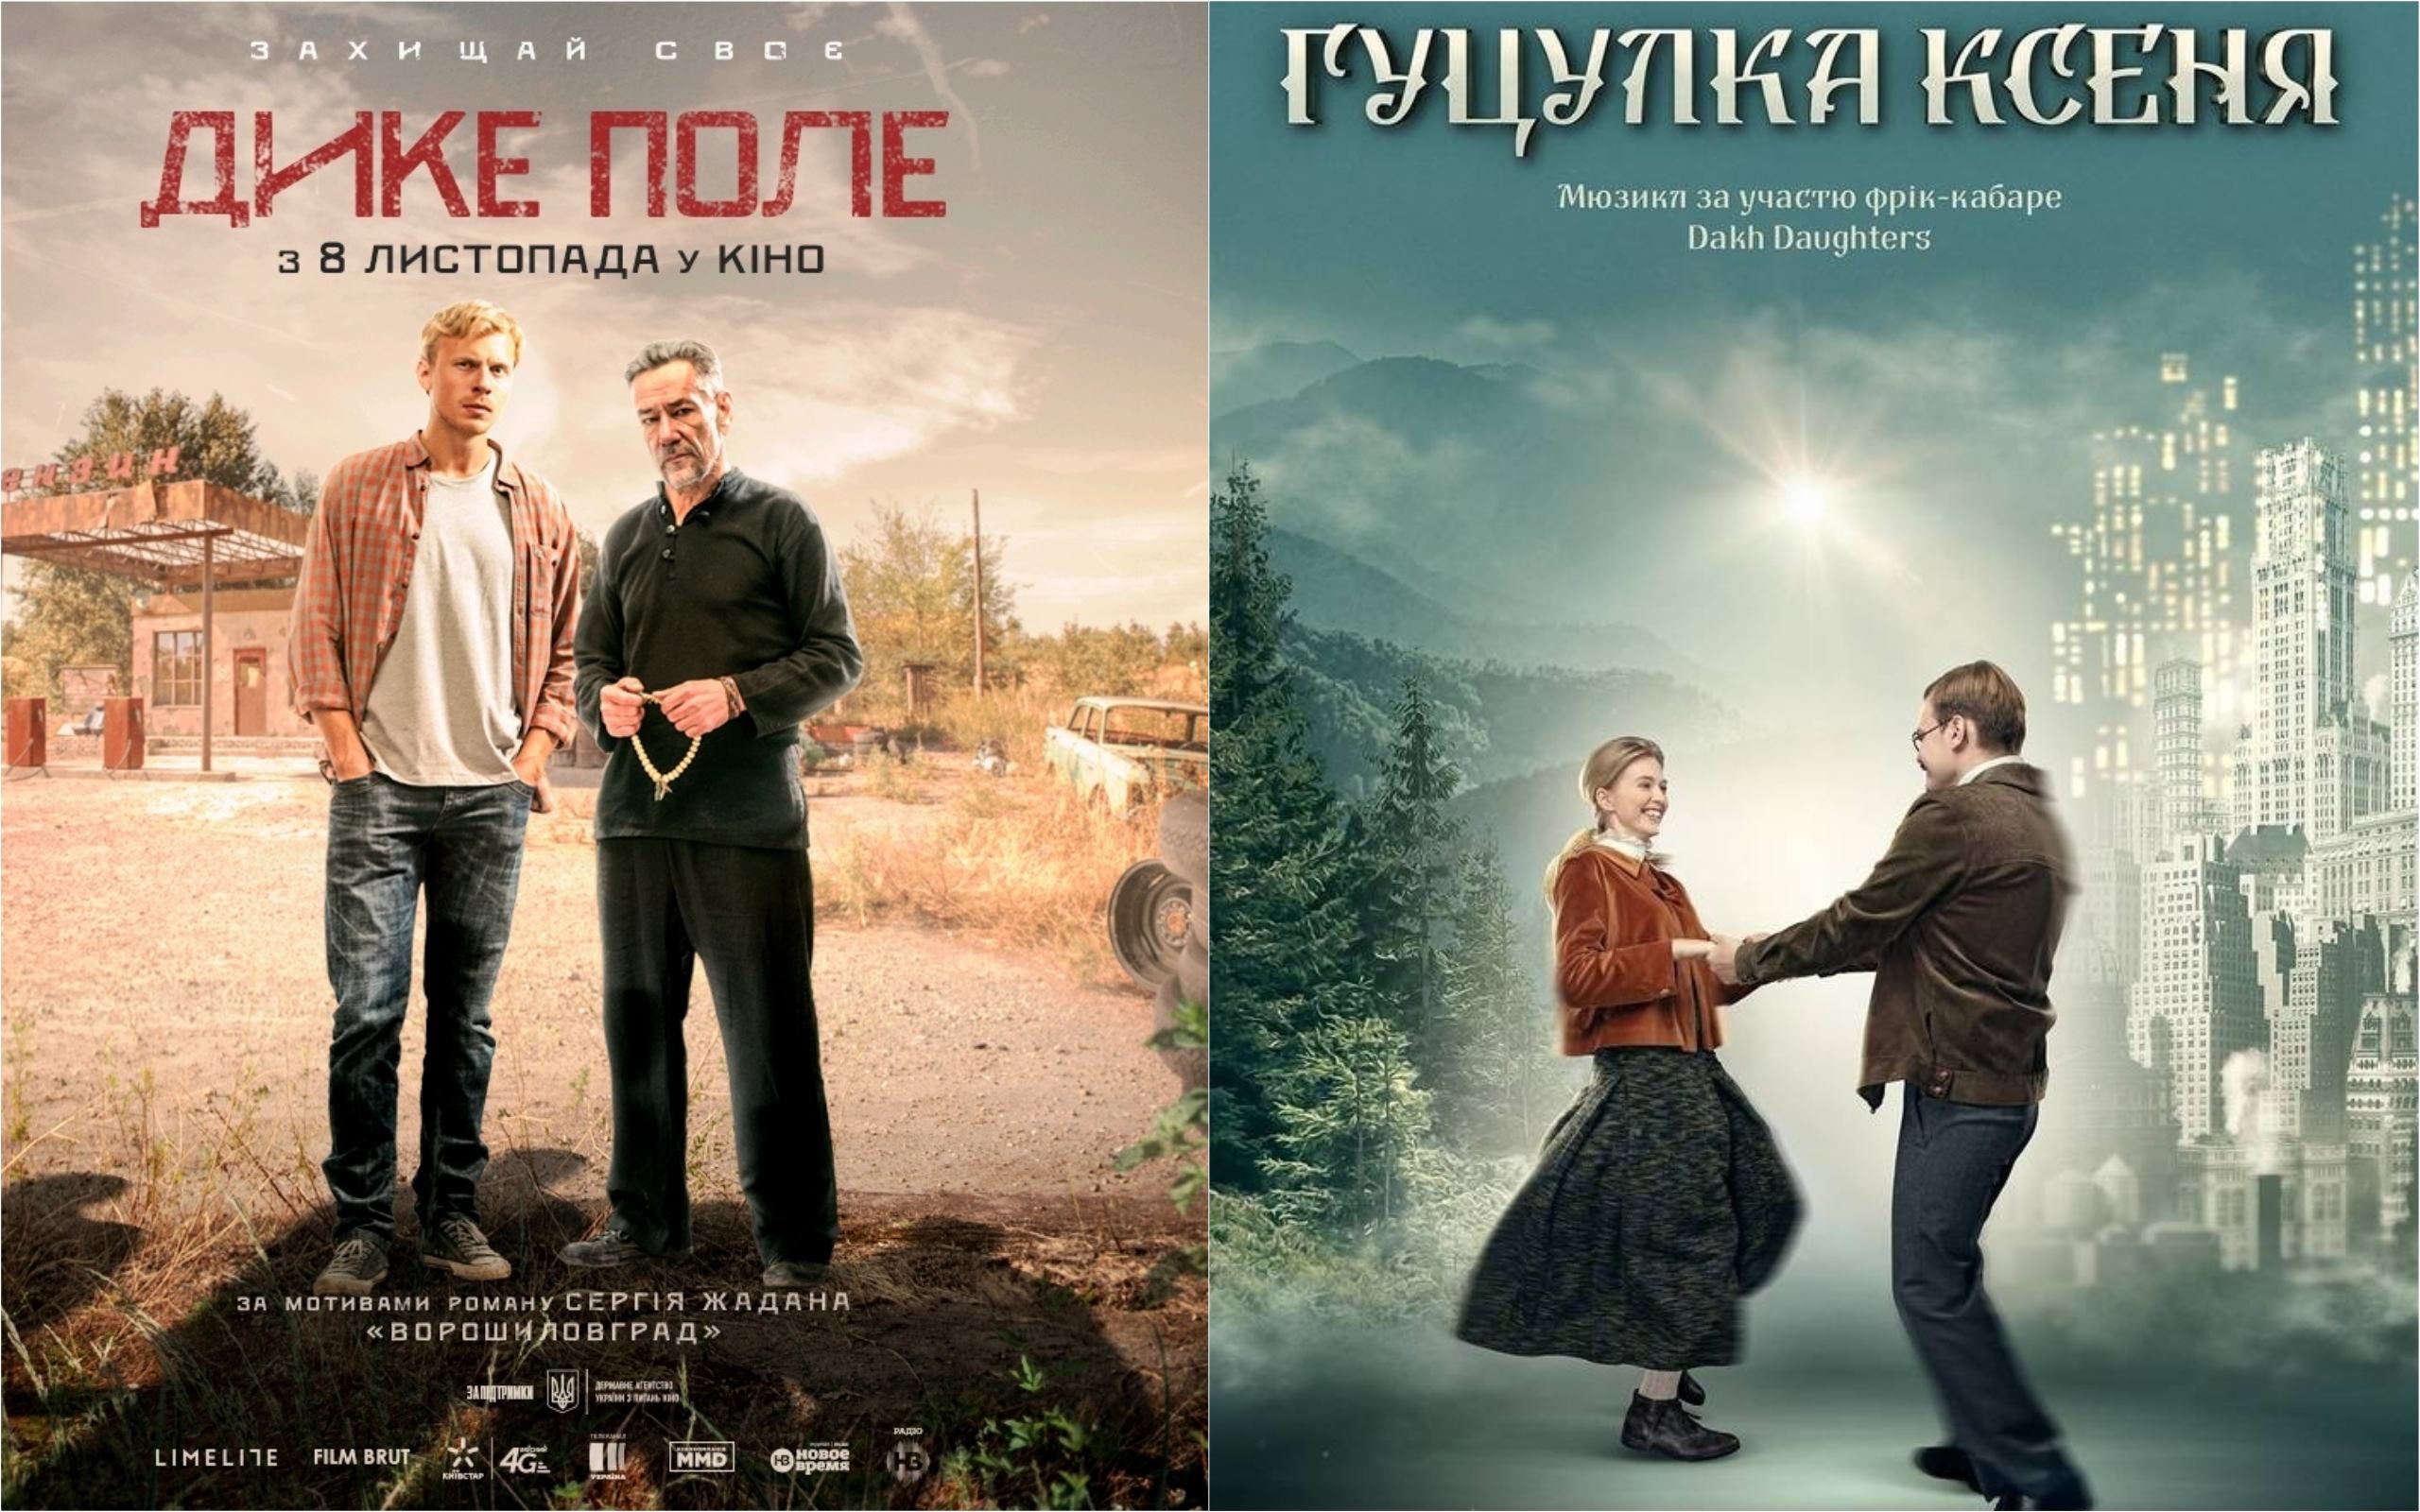 Фильмы "Гуцулка Ксеня" и "Дикое поле" будут показывать на кинофестивале в Финляндии